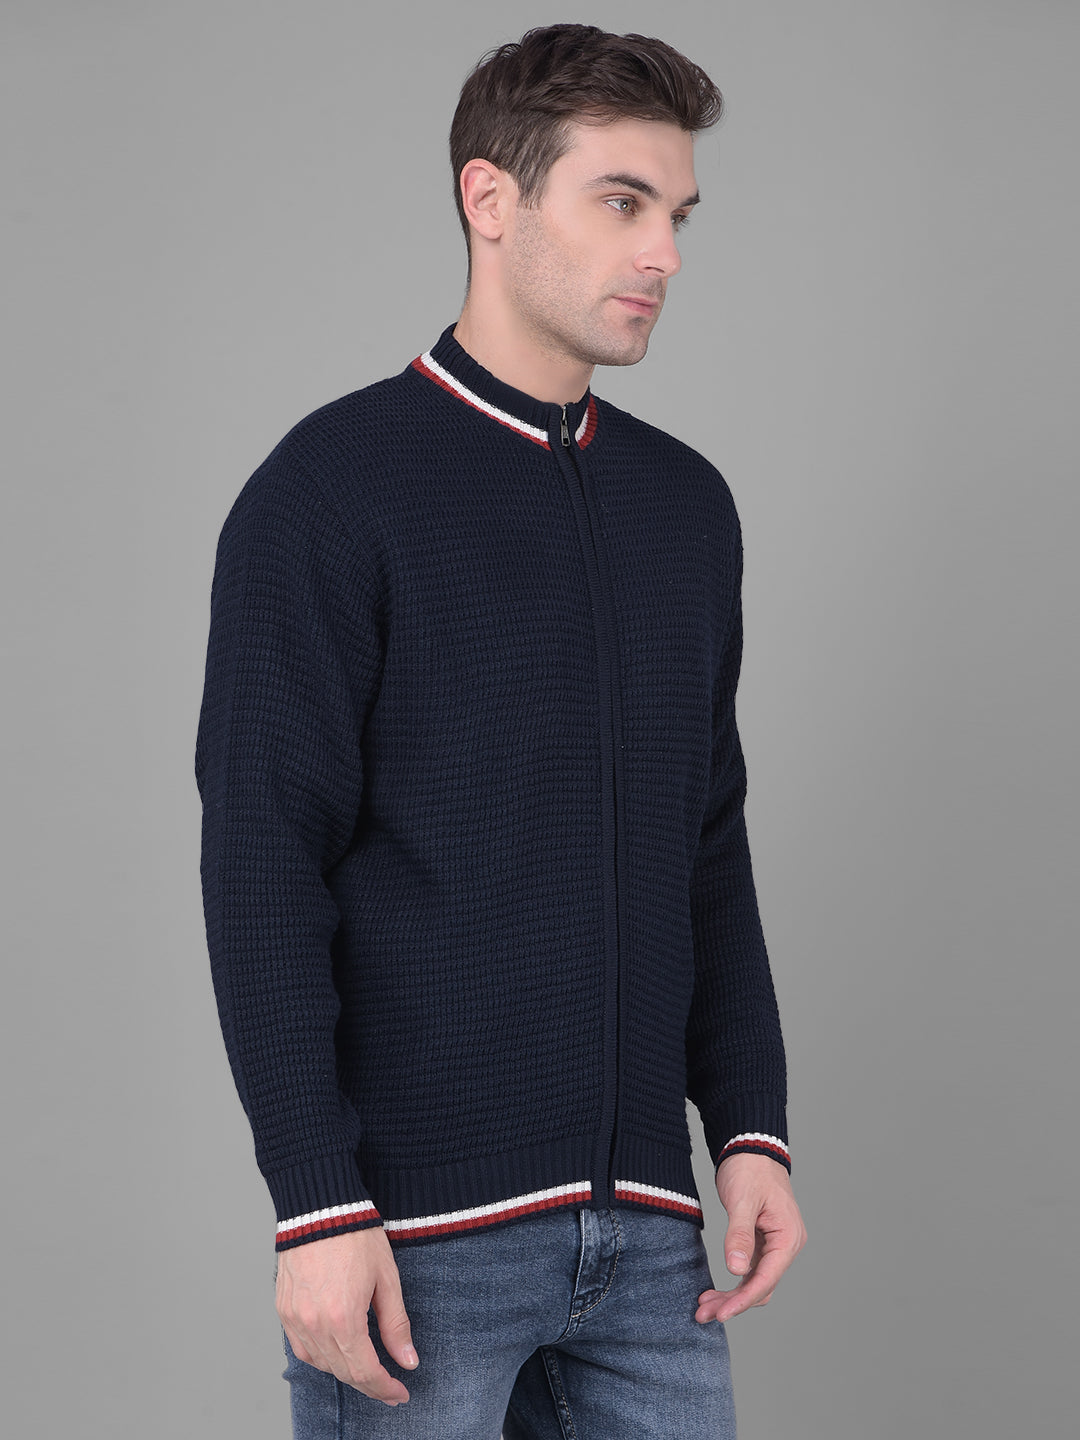 cobb solid navy blue high neck zipper sweater